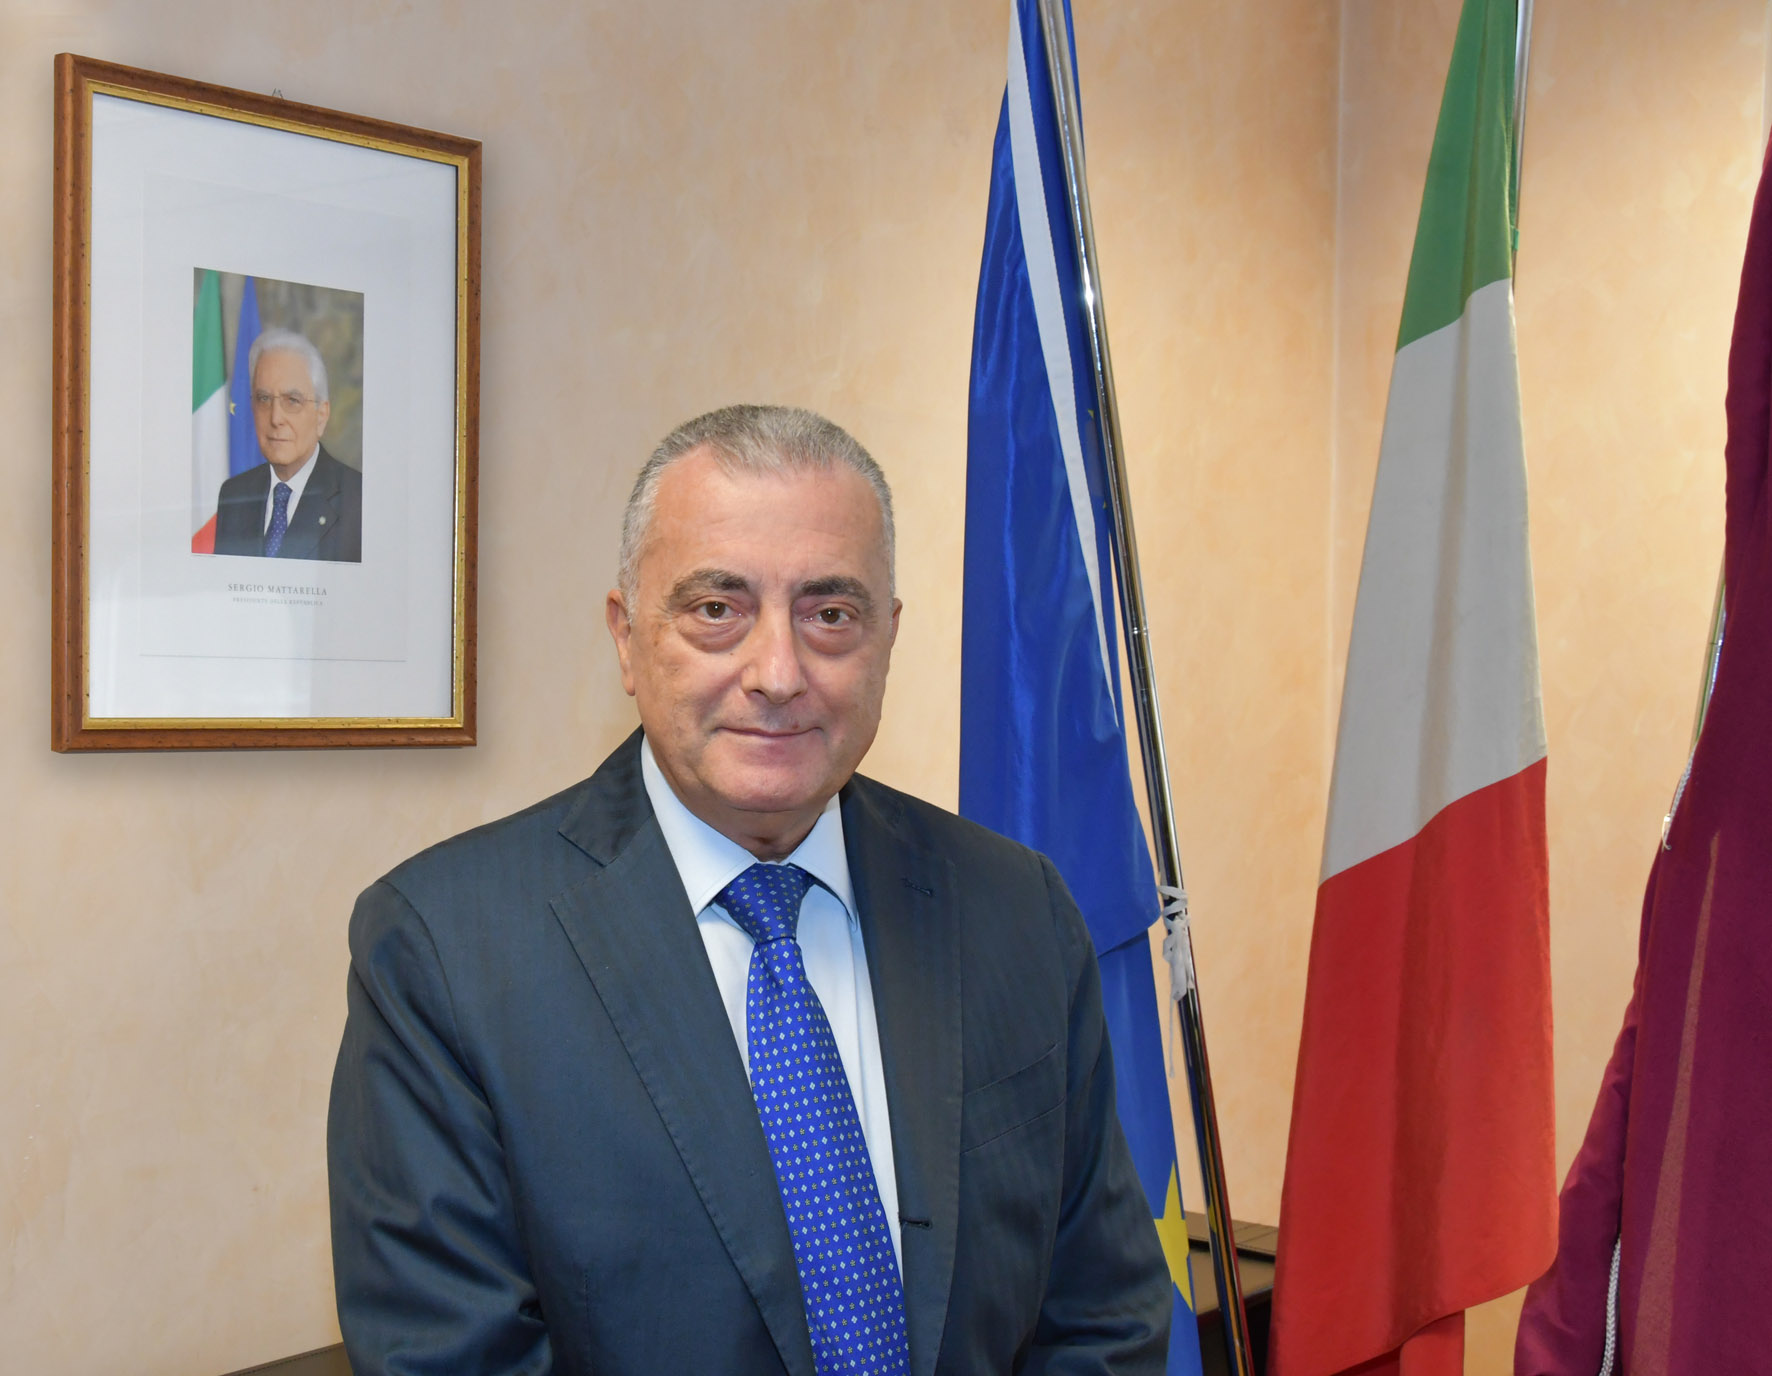 Dottor Alberto Francini Dirigente Generale di Pubblica Sicurezza